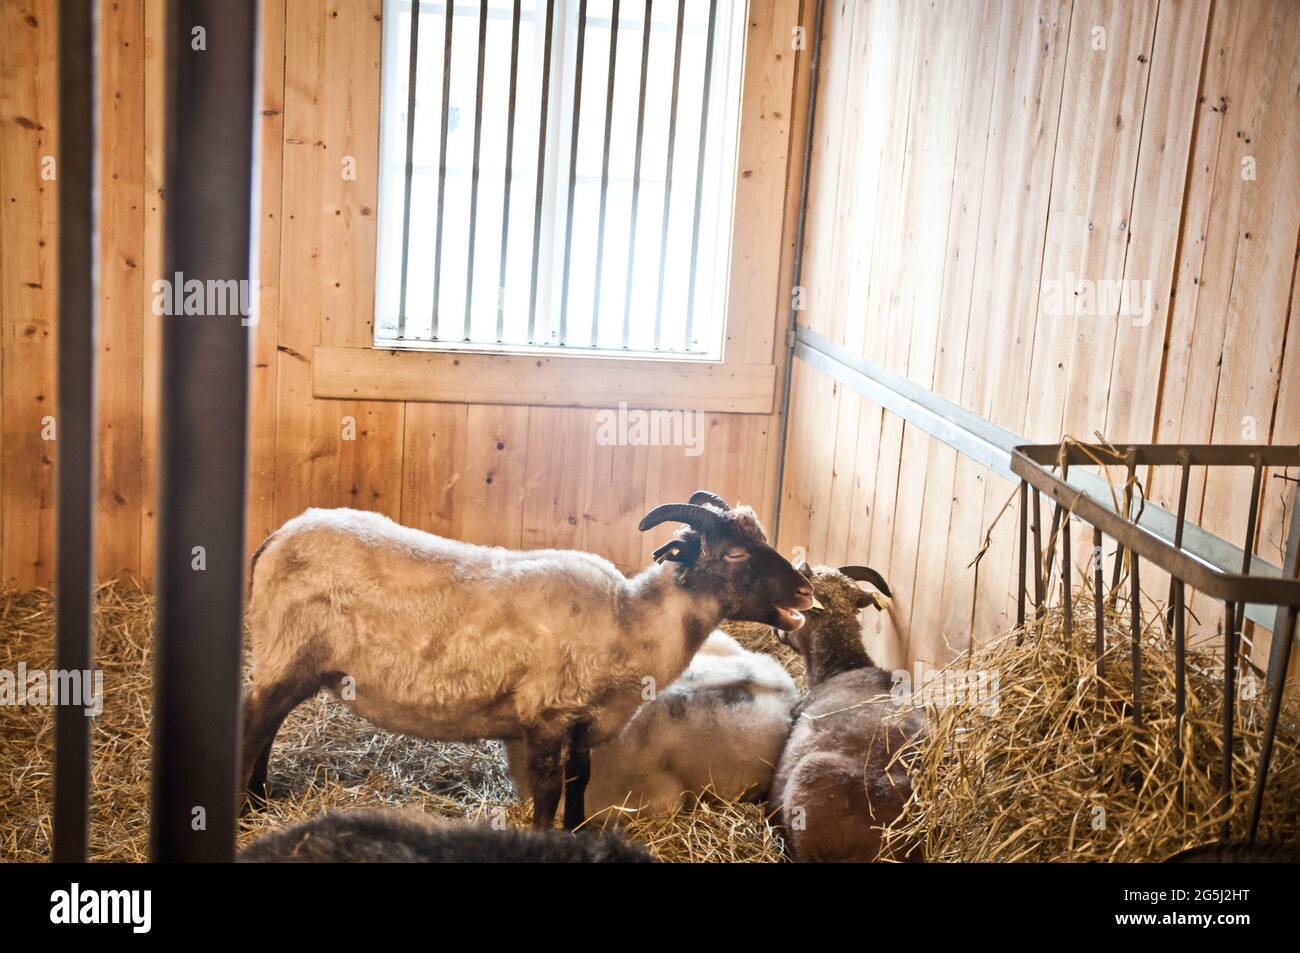 Beaucoup de jolies chèvres cornées debout, reposant et mangeant du foin à l'intérieur dans une grange d'animaux dans une ferme avec fenêtre et murs de bois dans la campagne rurale. Banque D'Images